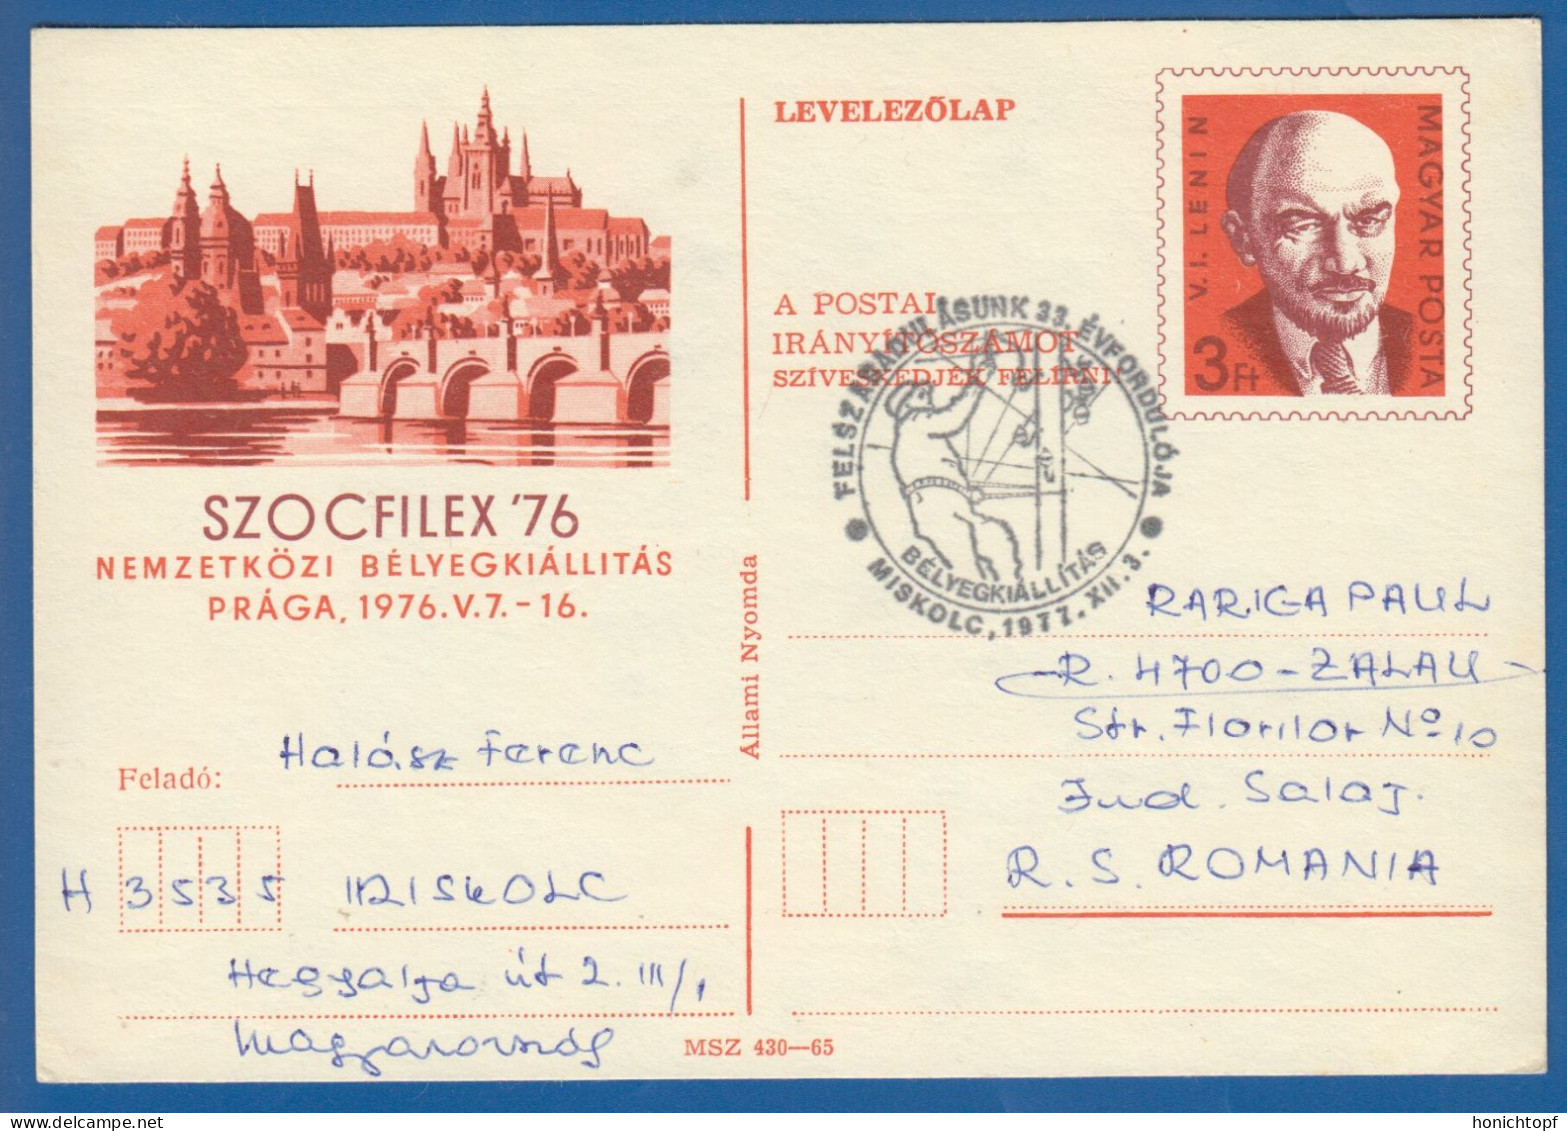 Ungarn; PC Levelezö Lap 3 Ft; Lenin; Szocfilex 76 Prag; Miskolc 1977 - Lenin